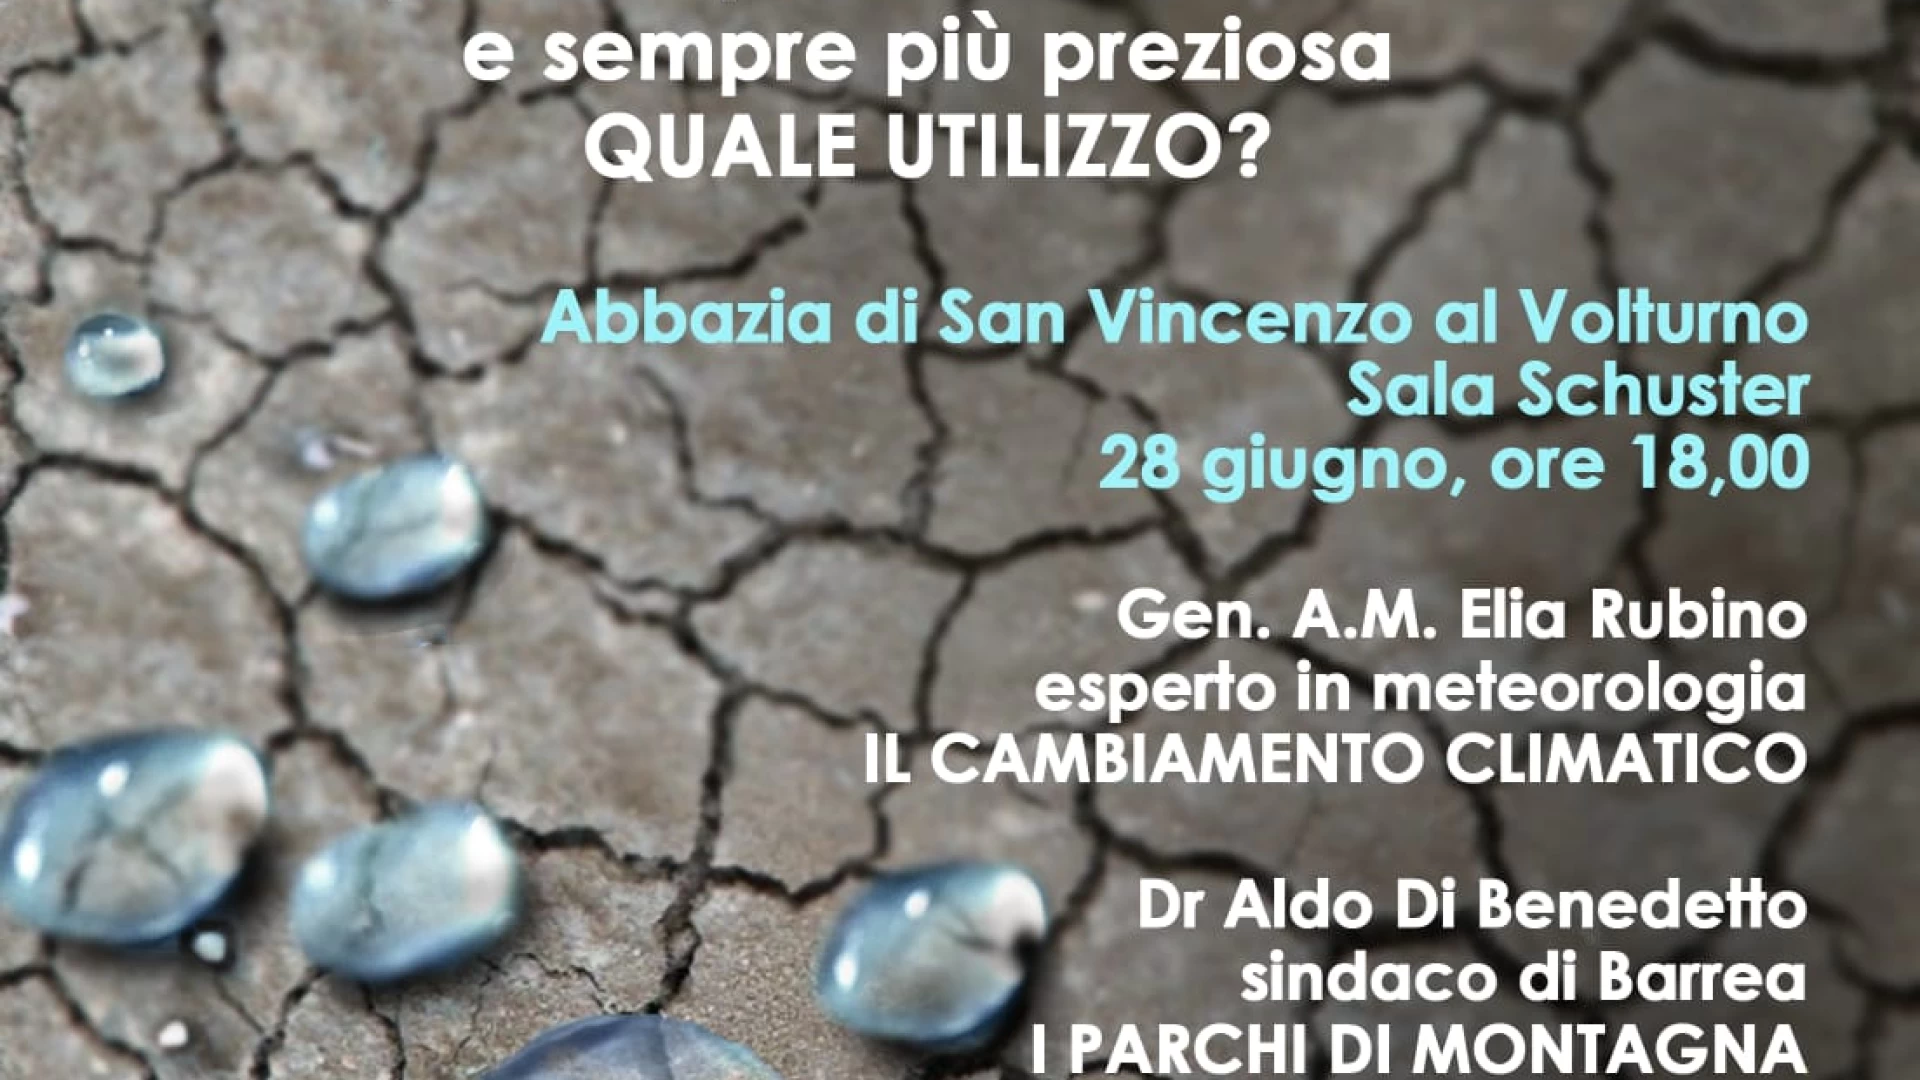 Cambiamenti climatici e scarsita’ delle risorse idriche, se ne discute presso l’Abbazia di San Vincenzo al Volturno.